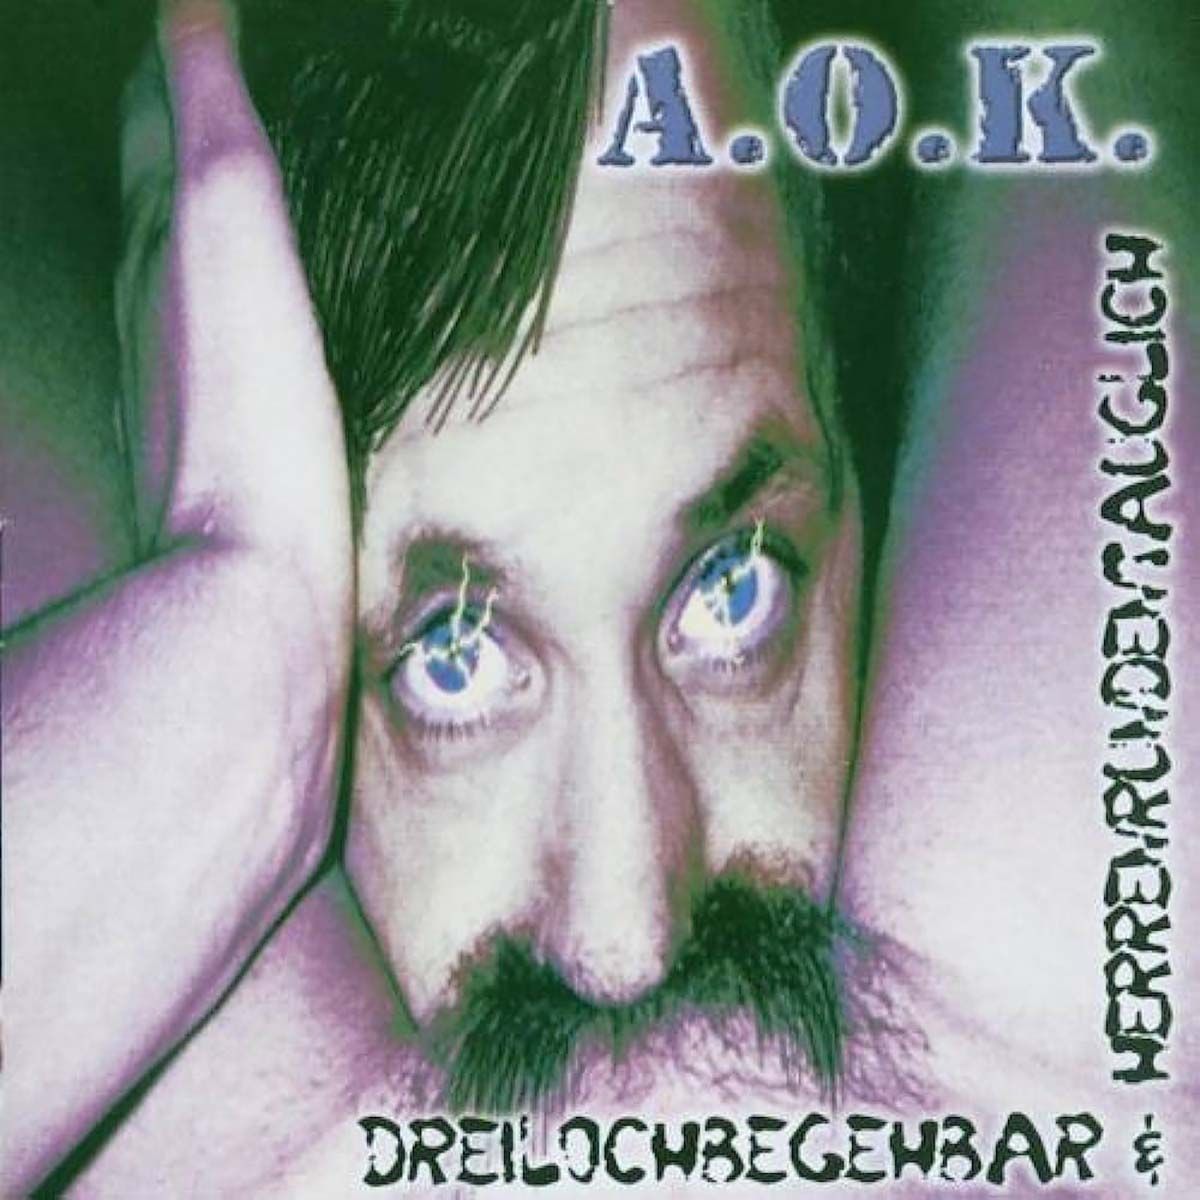 A.O.K. - Dreilochbegehbar & Herrenrundentauglich